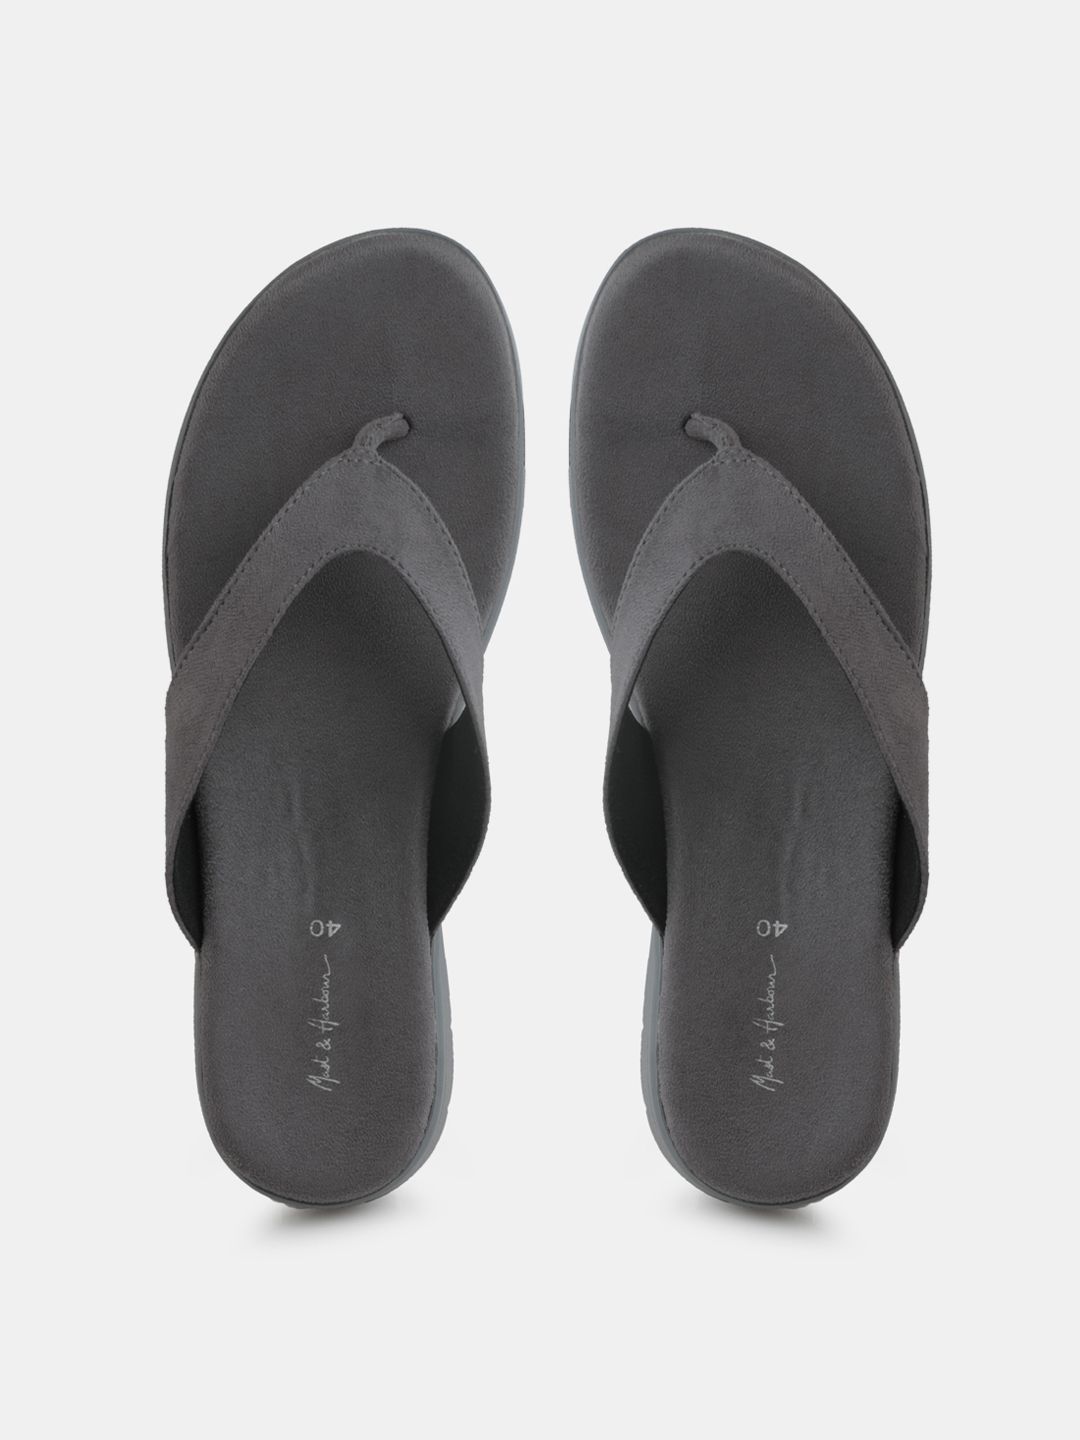 Mast & Harbour Women Grey Solid Comfort Heels Price in India